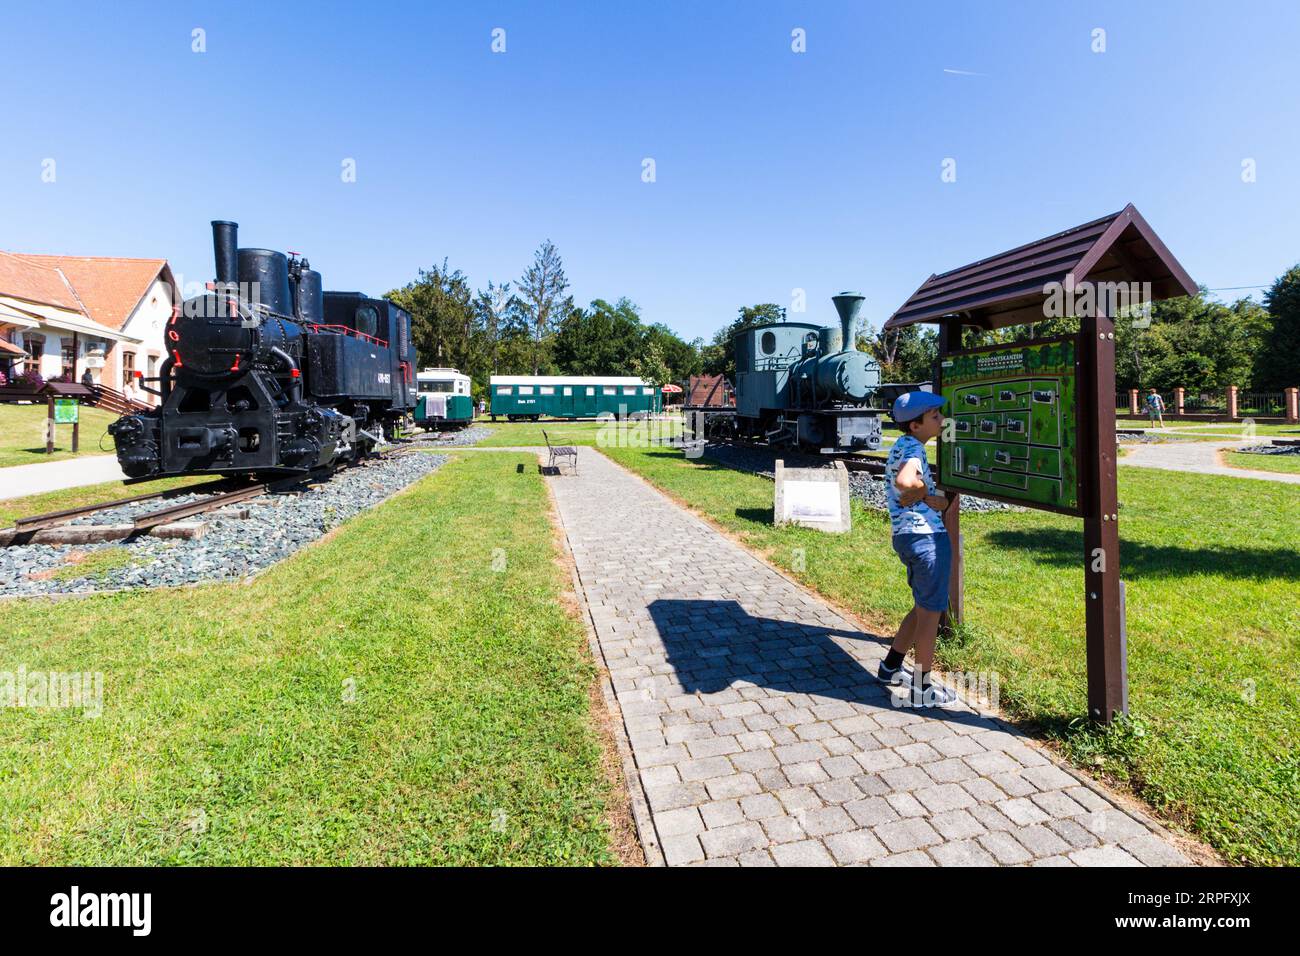 Nagycenki Szechenyi Muzeumvasut chemin de fer à voie étroite, musée extérieur de locomotive à vapeur, Nagycenk, Hongrie Banque D'Images